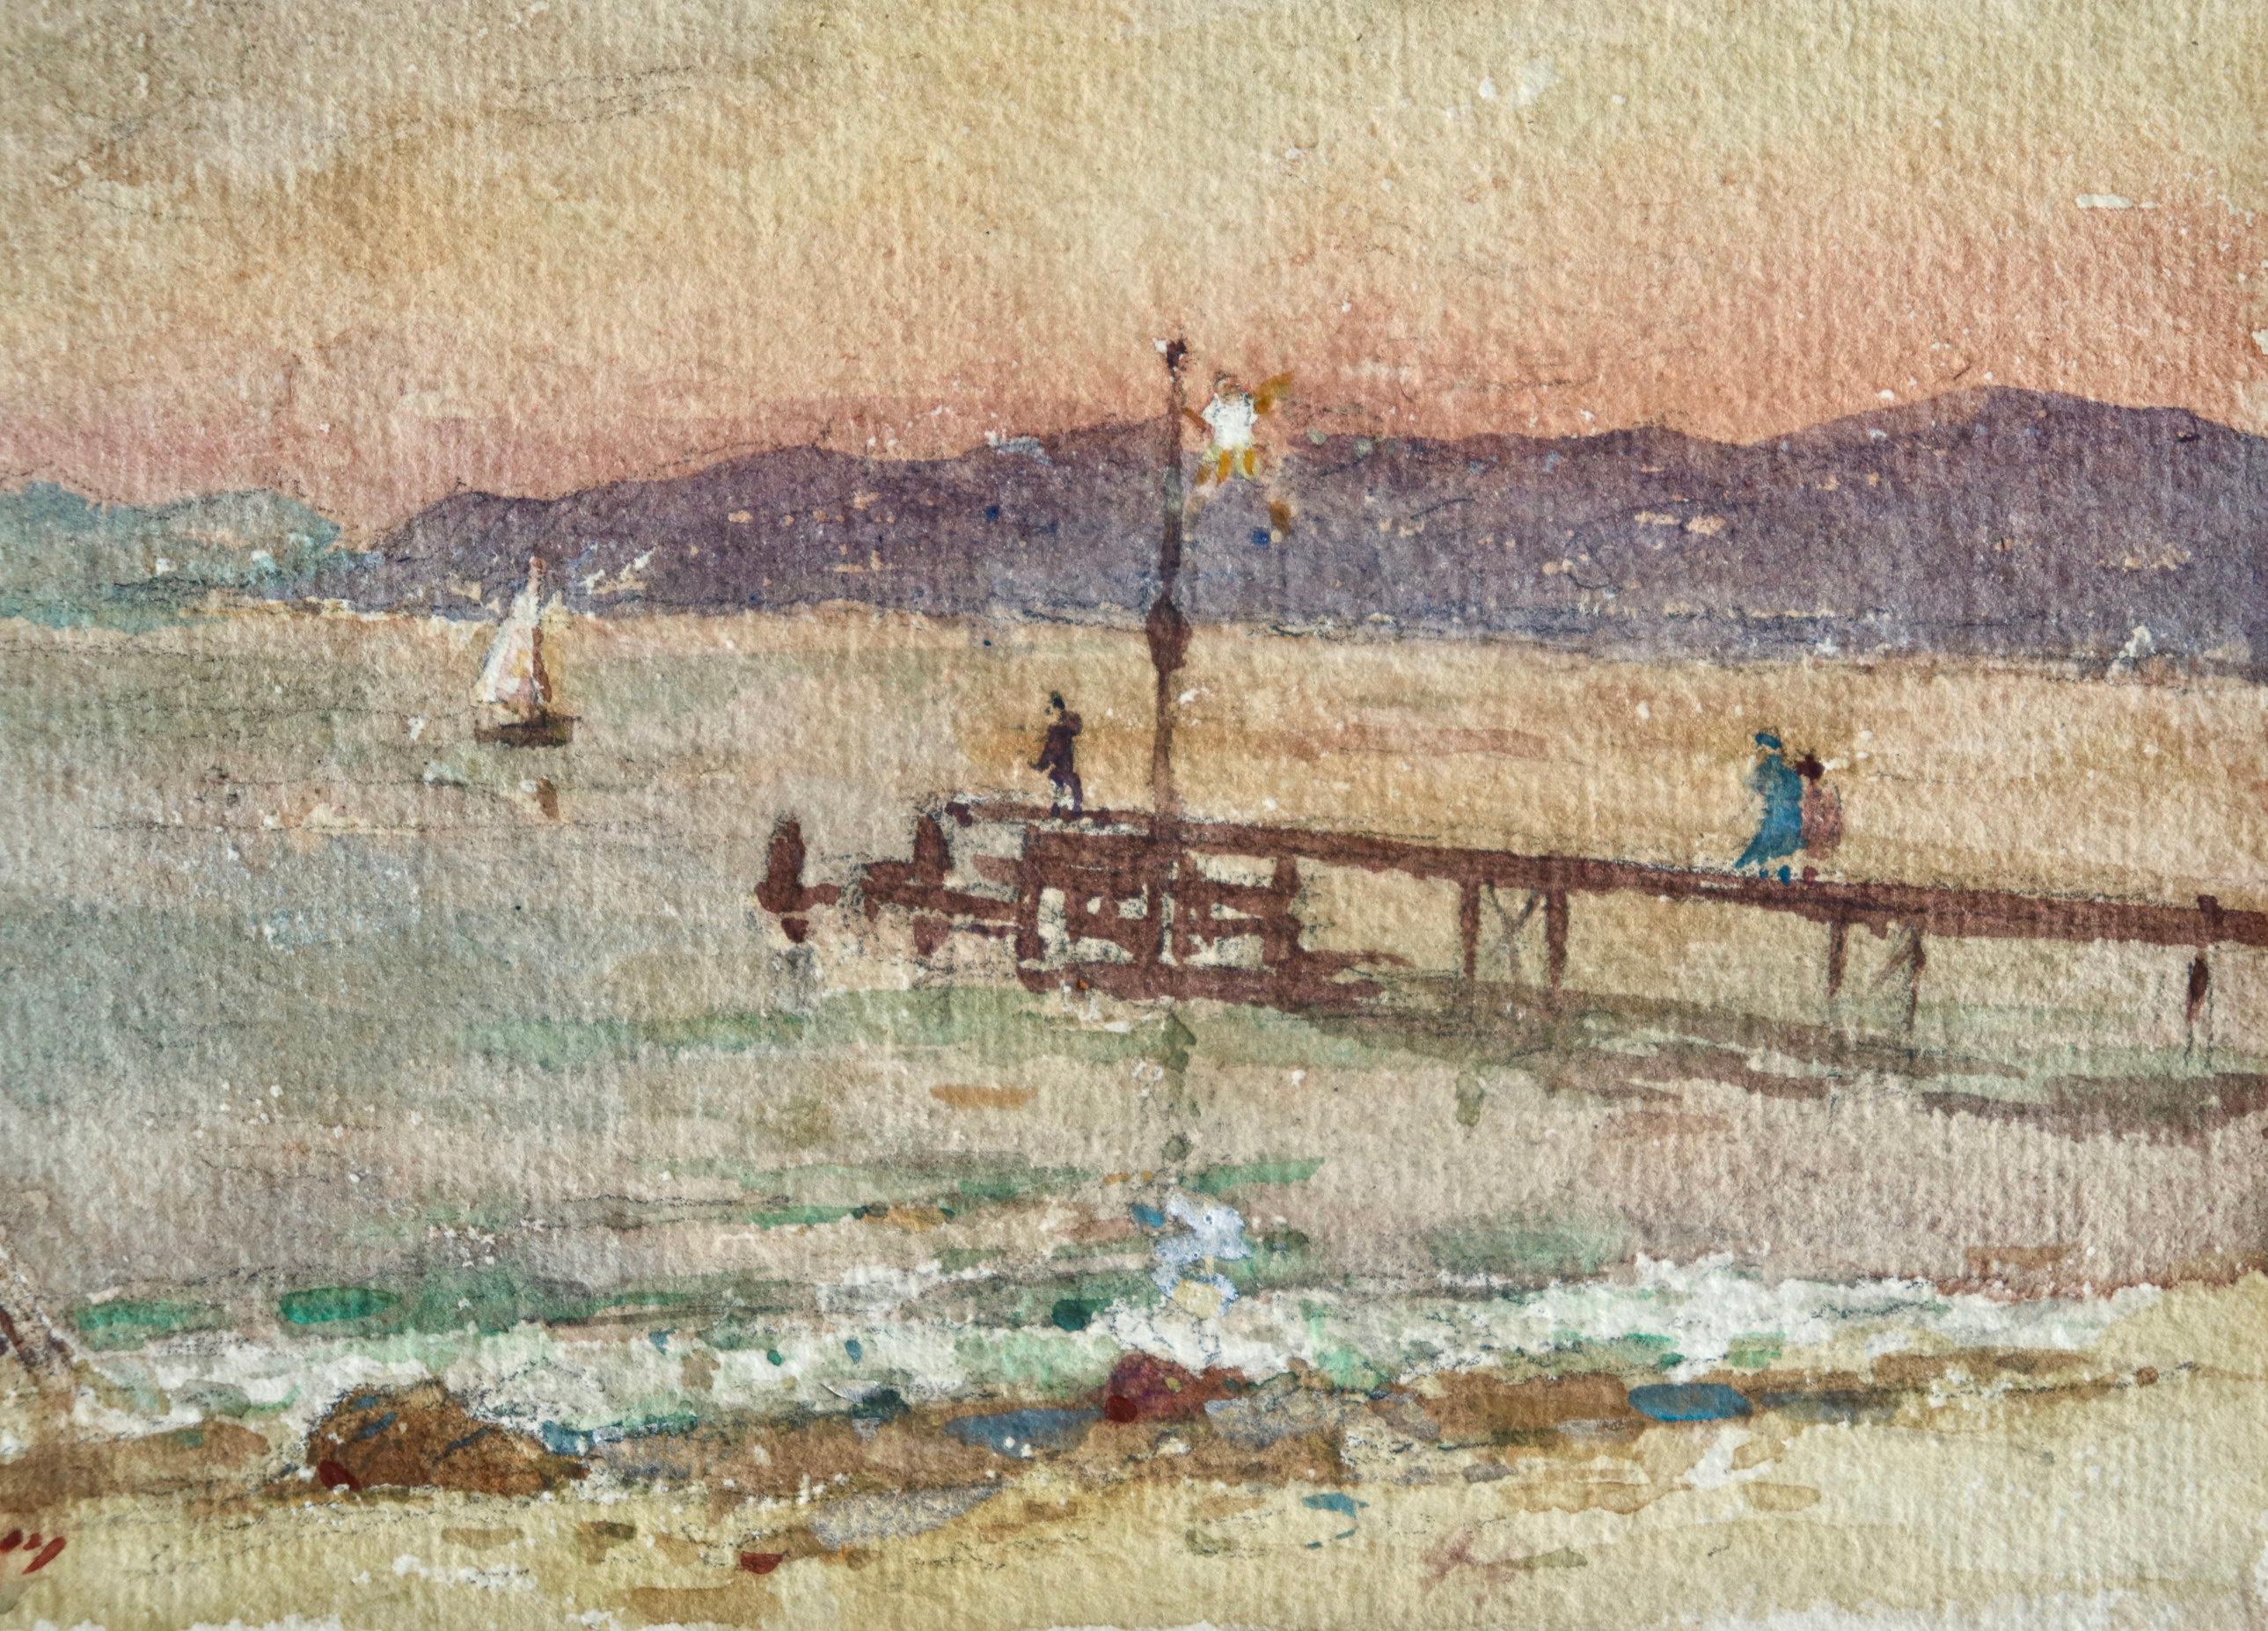 Le quai - le soir - Impressionist Watercolor, Figures at the Coast by H Duhem - Beige Figurative Art by Henri Duhem